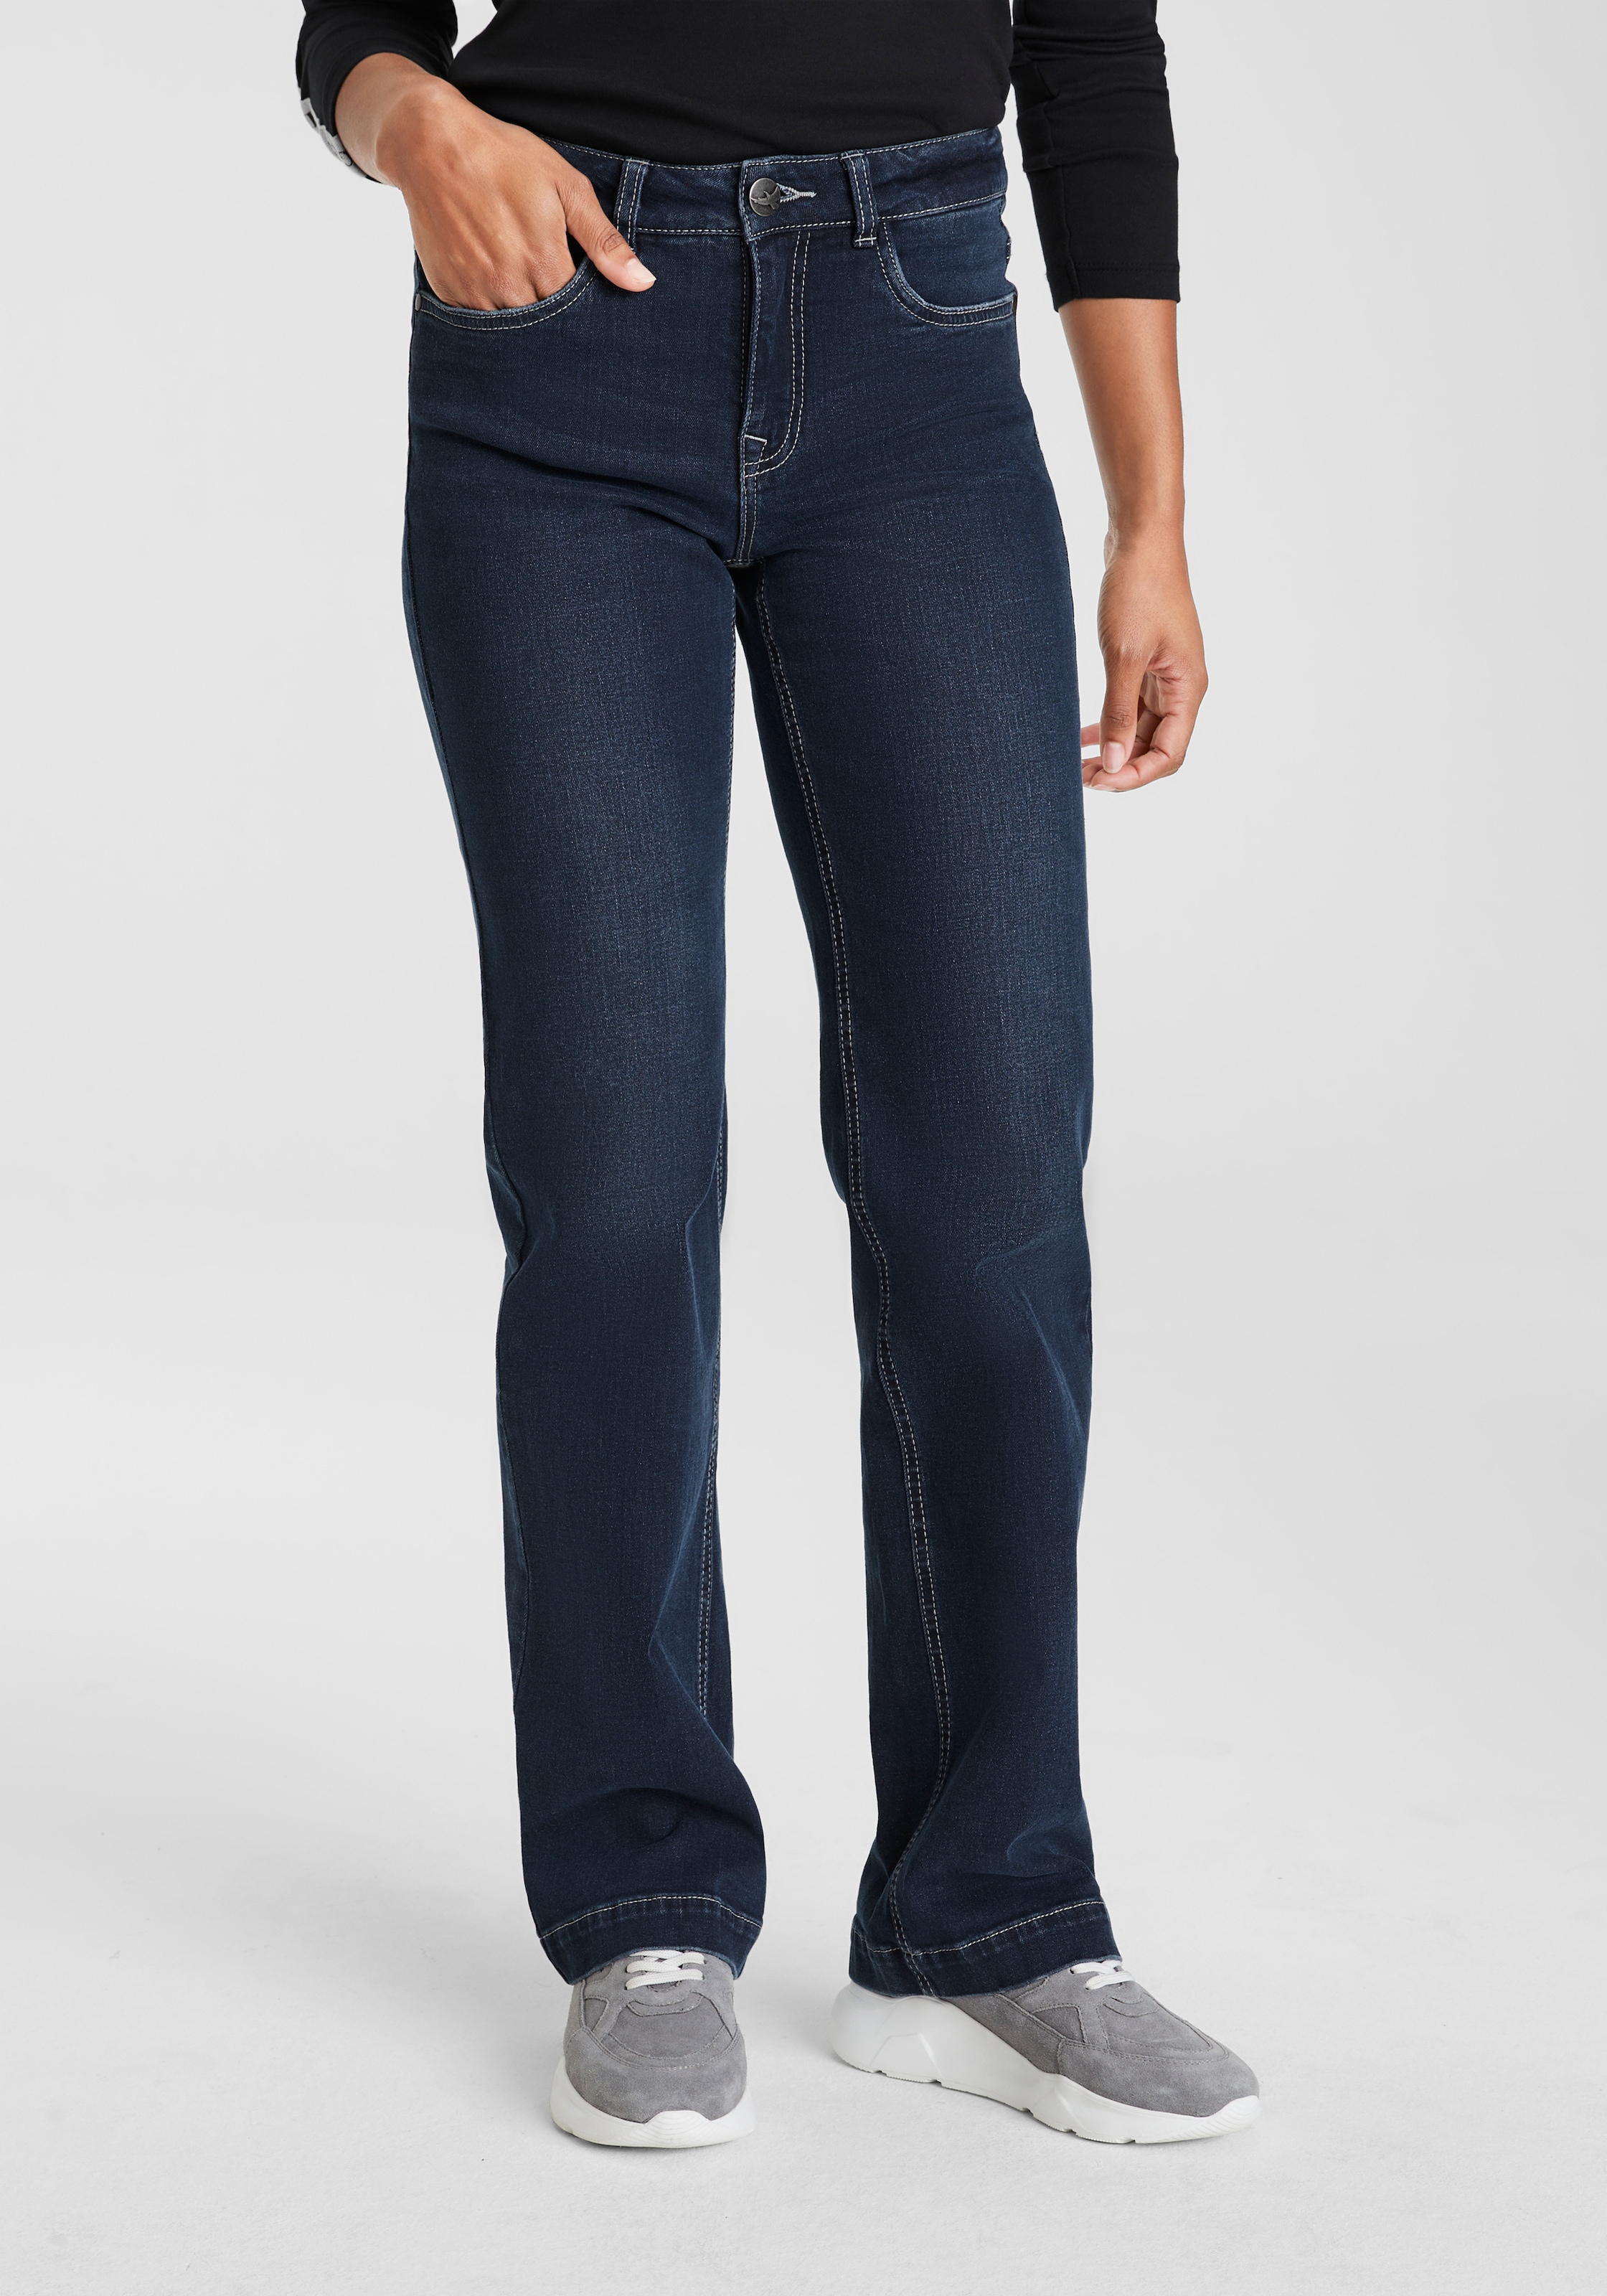 & Arizona BAUR | günstige Jeans %% Angebote Outlet SALE